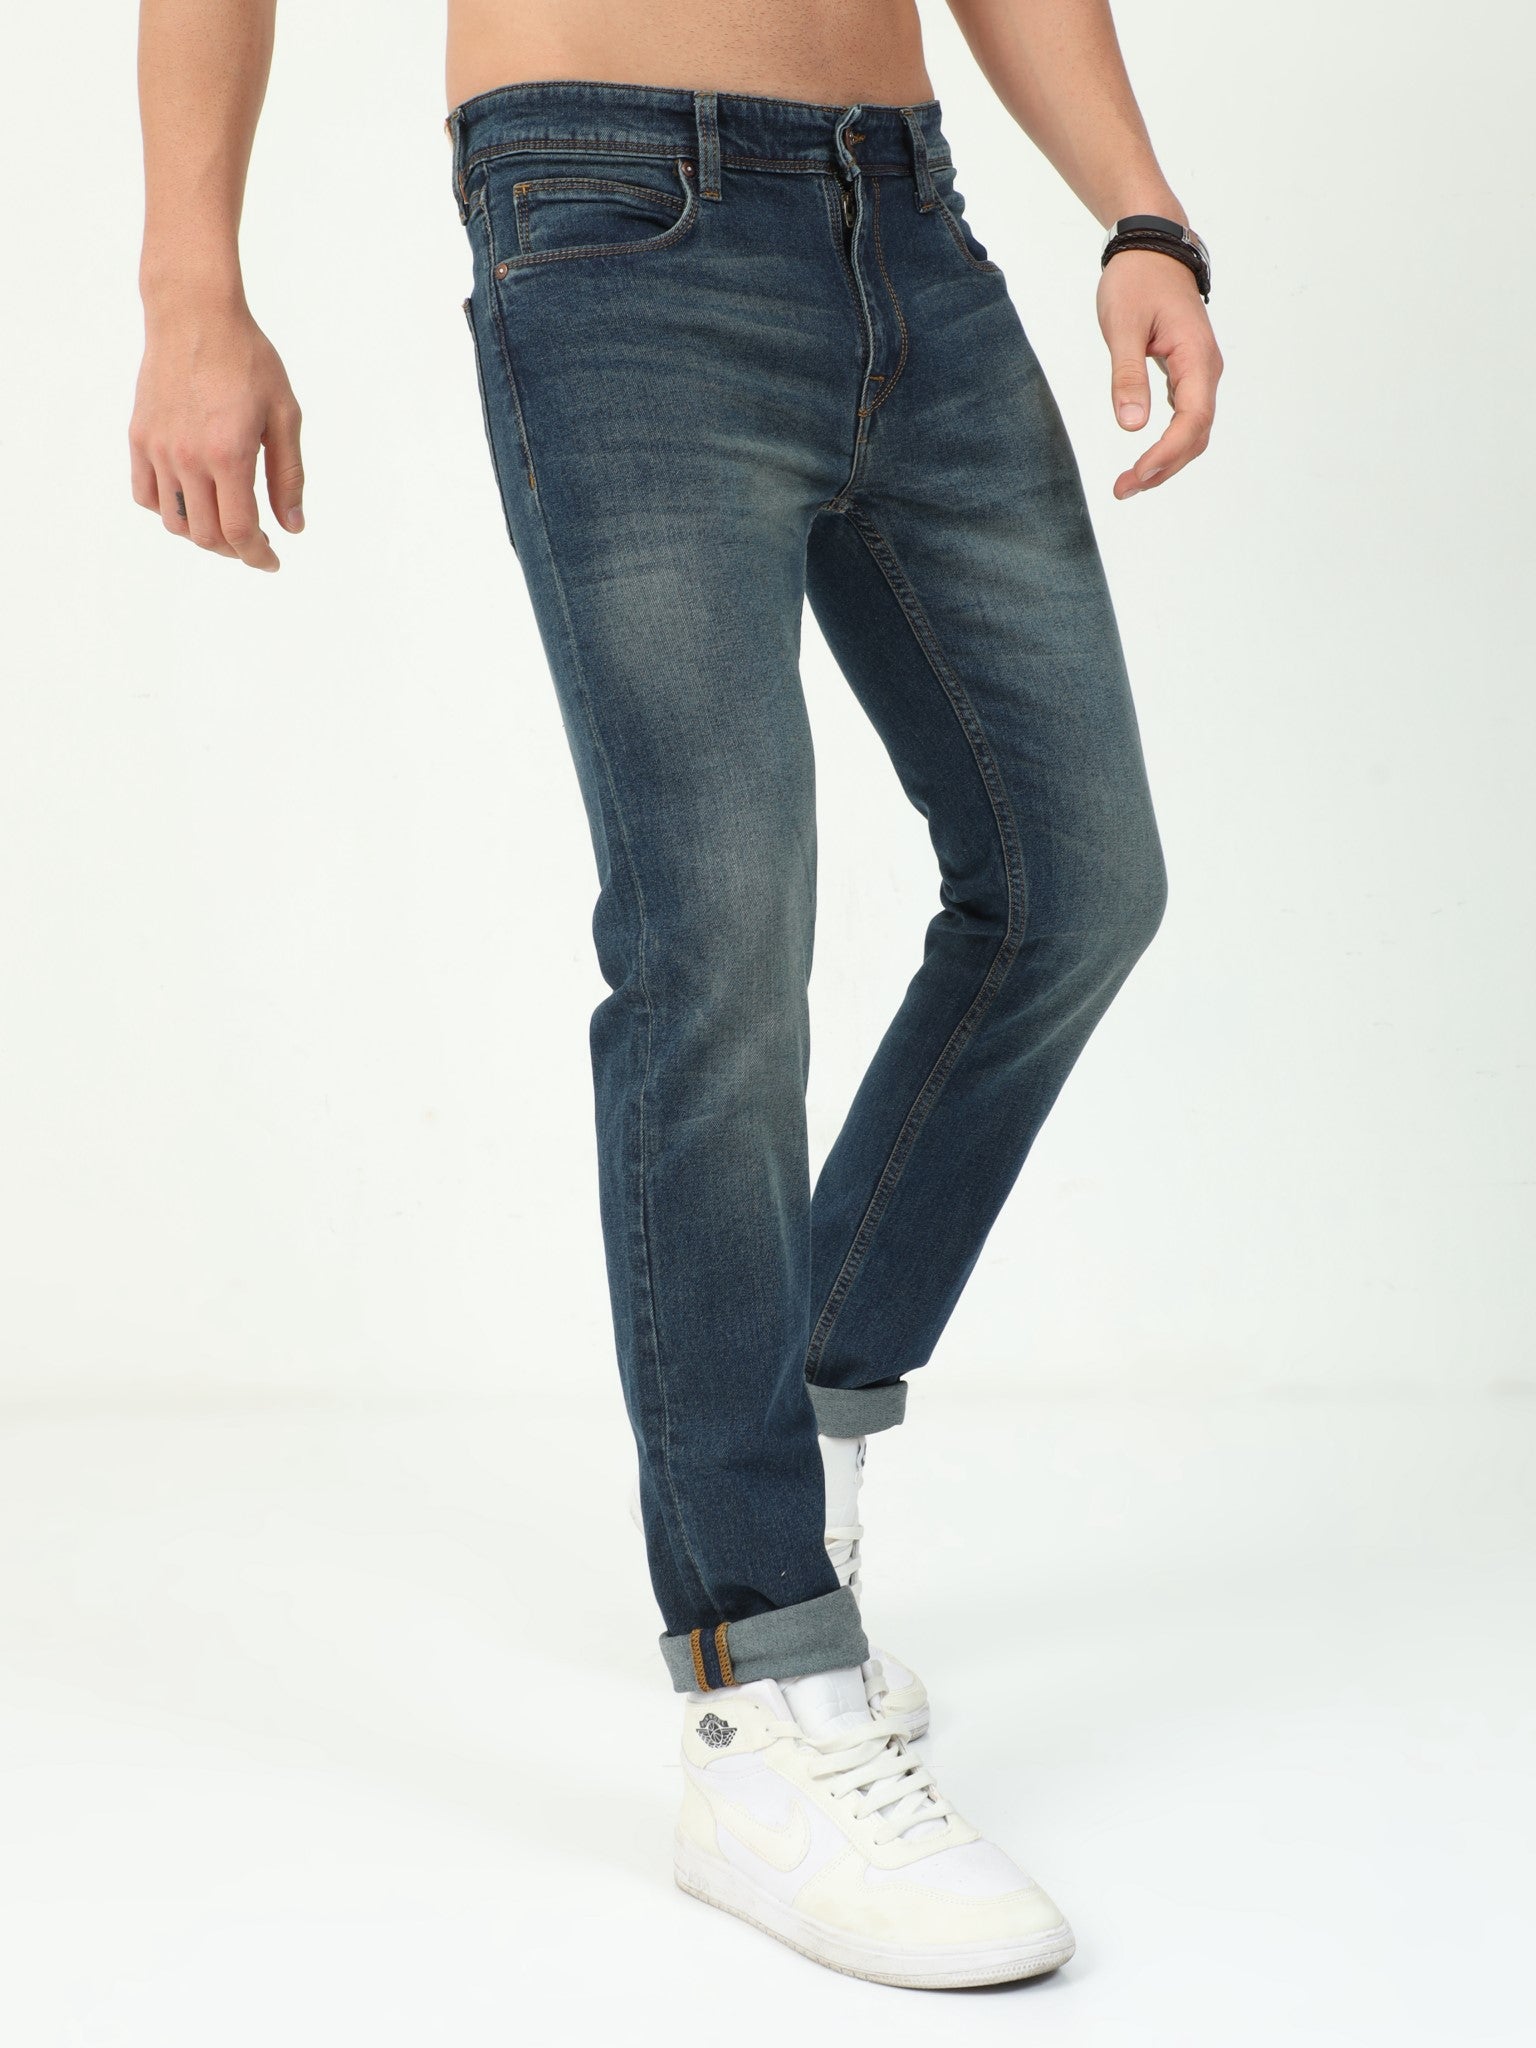 Darkblue Slim Fit Jeans for Men 